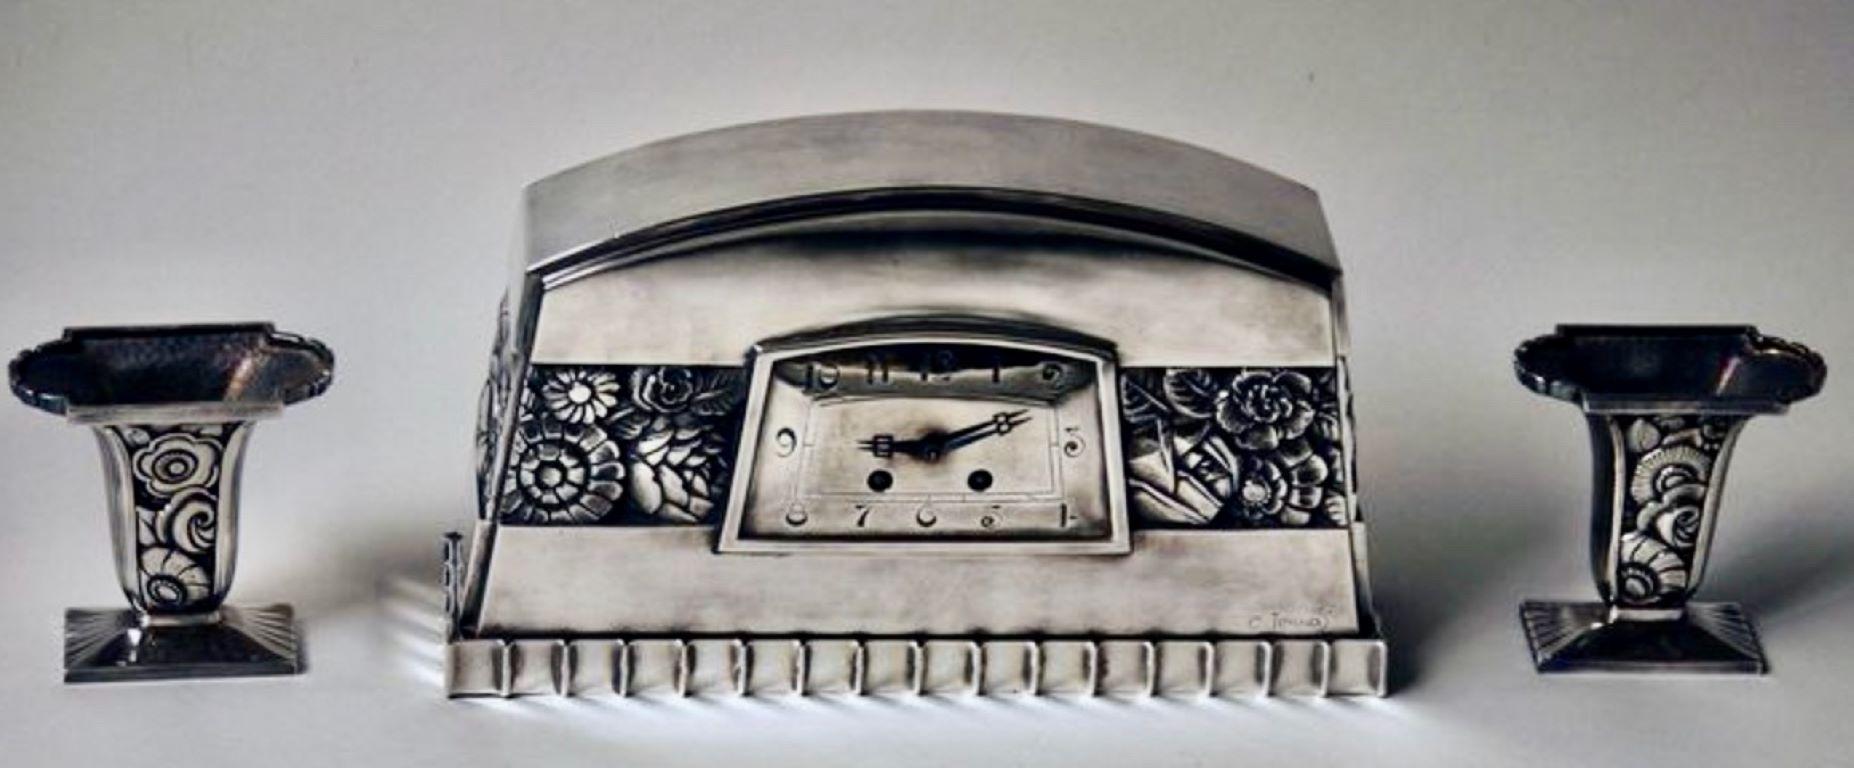 Französische Art Deco Manteluhr aus versilberter Bronze von C, Terras 1925. Ein sehr seltenes Modell C. Terras versilberte Bronze Art Deco Uhr. Ungewöhnliches Design mit zentralem geometrischem Blumenband, gewölbtem Oberteil und rechteckigem Sockel